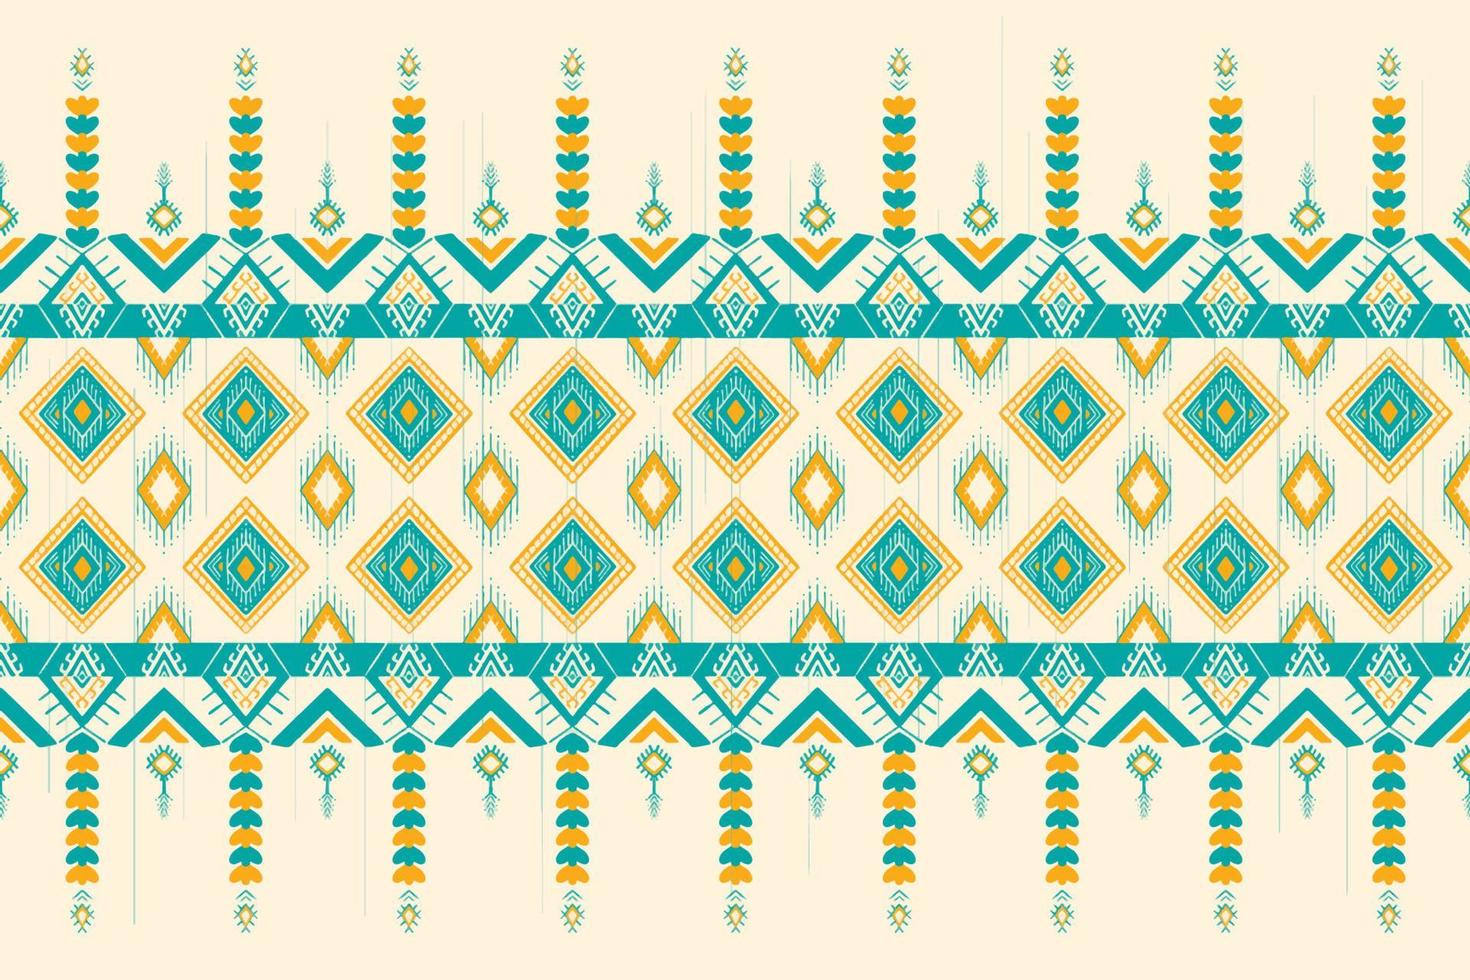 gele en groene wintertaling op ivoor. geometrische etnische oosterse patroon traditioneel ontwerp voor achtergrond, tapijt, behang, kleding, verpakking, batik, stof, vector illustratie borduurstijl